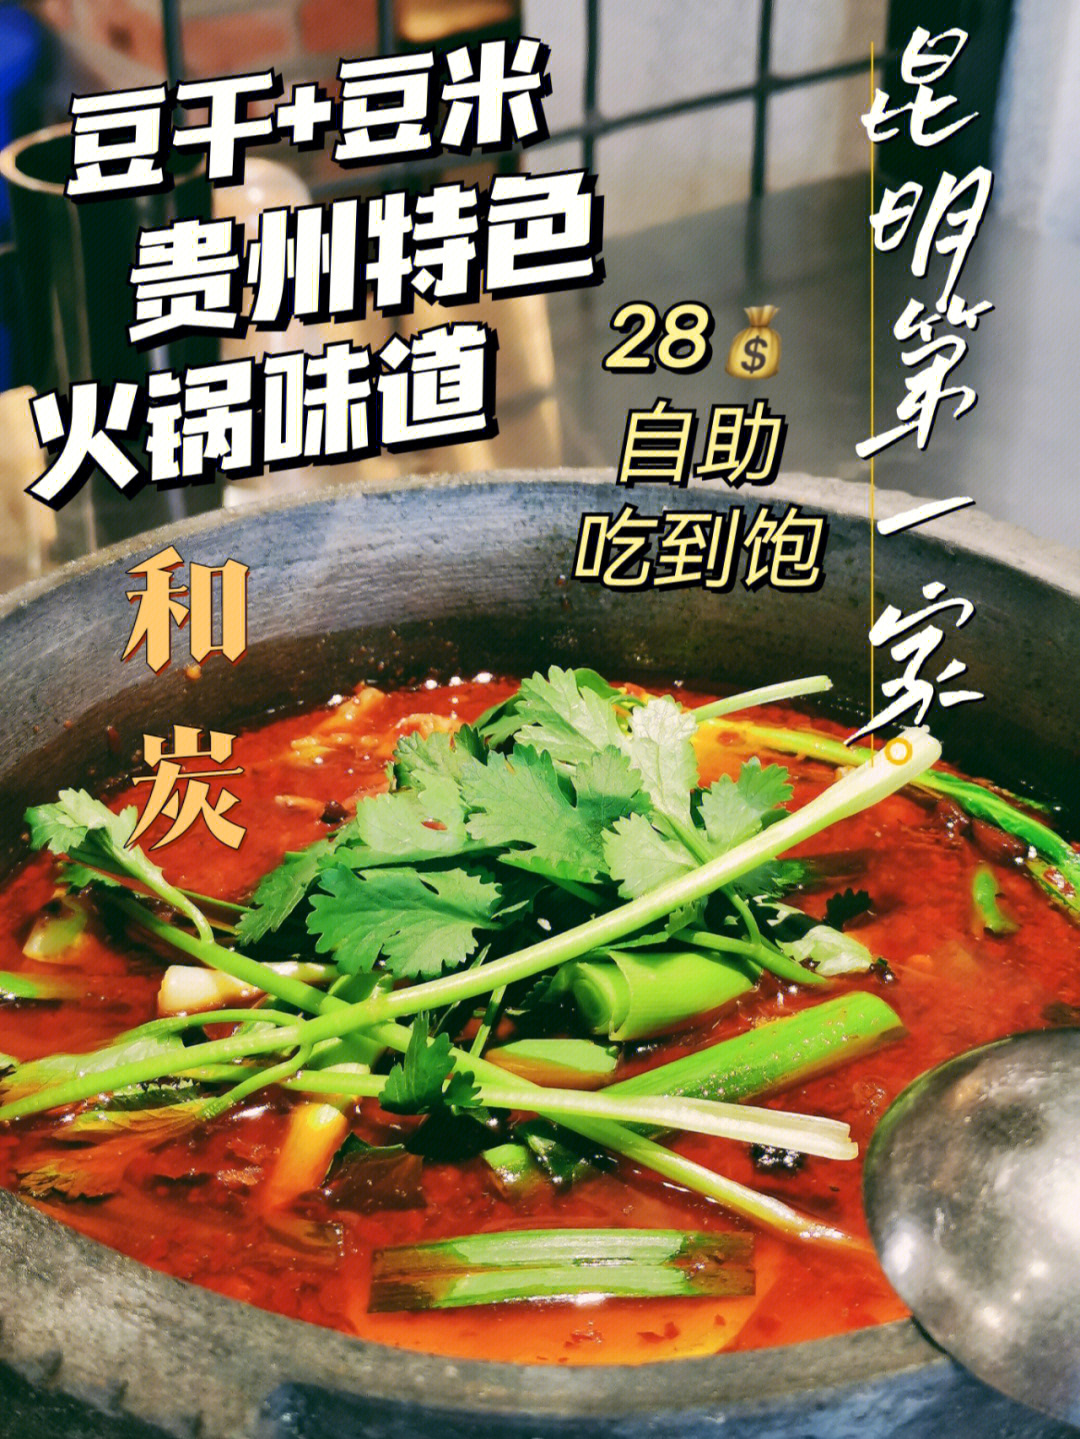 来咯来咯它真的来咯75贵州火锅界02的三大巨头之一:豆干火锅